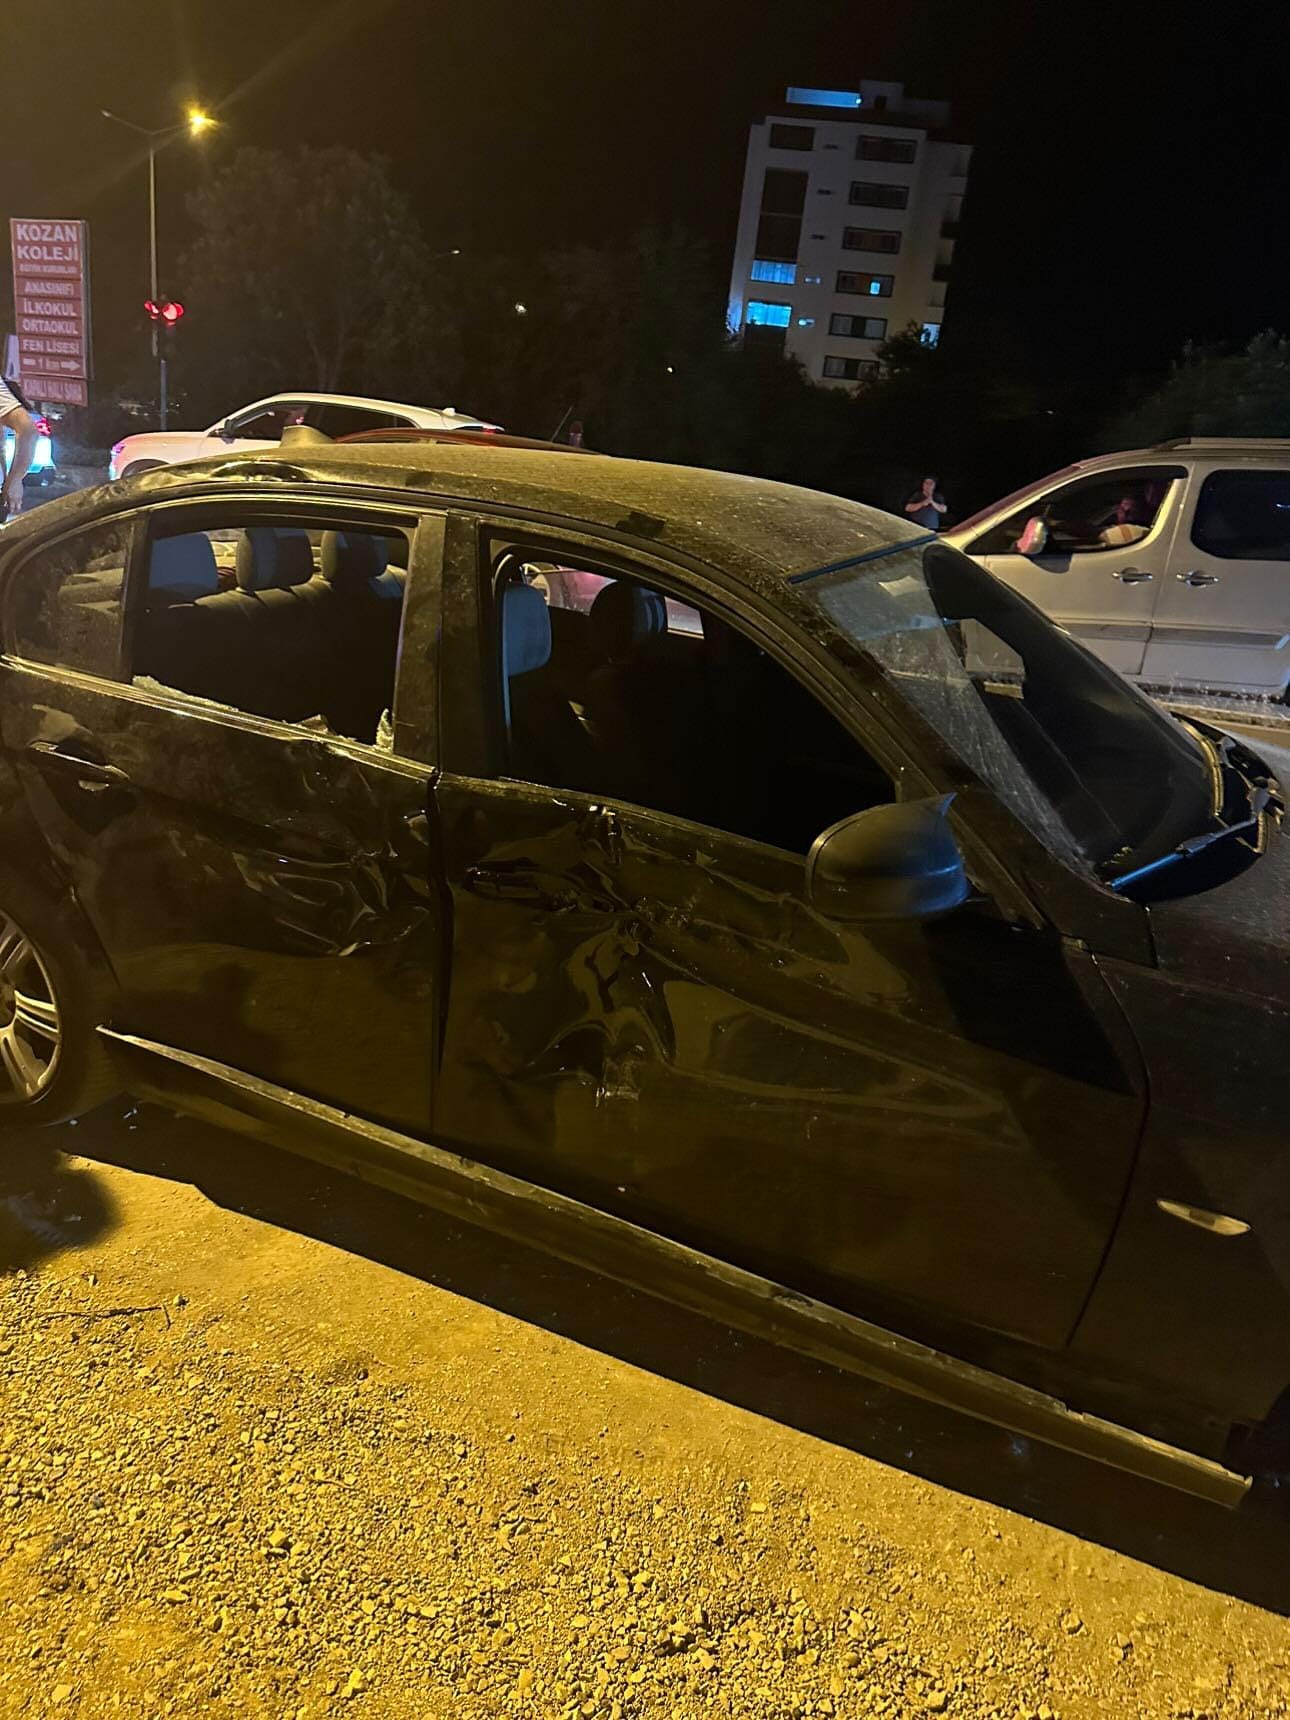 Kozan’da Meydana Gelen Trafik Kazasında 3 Kişi Yaralandı